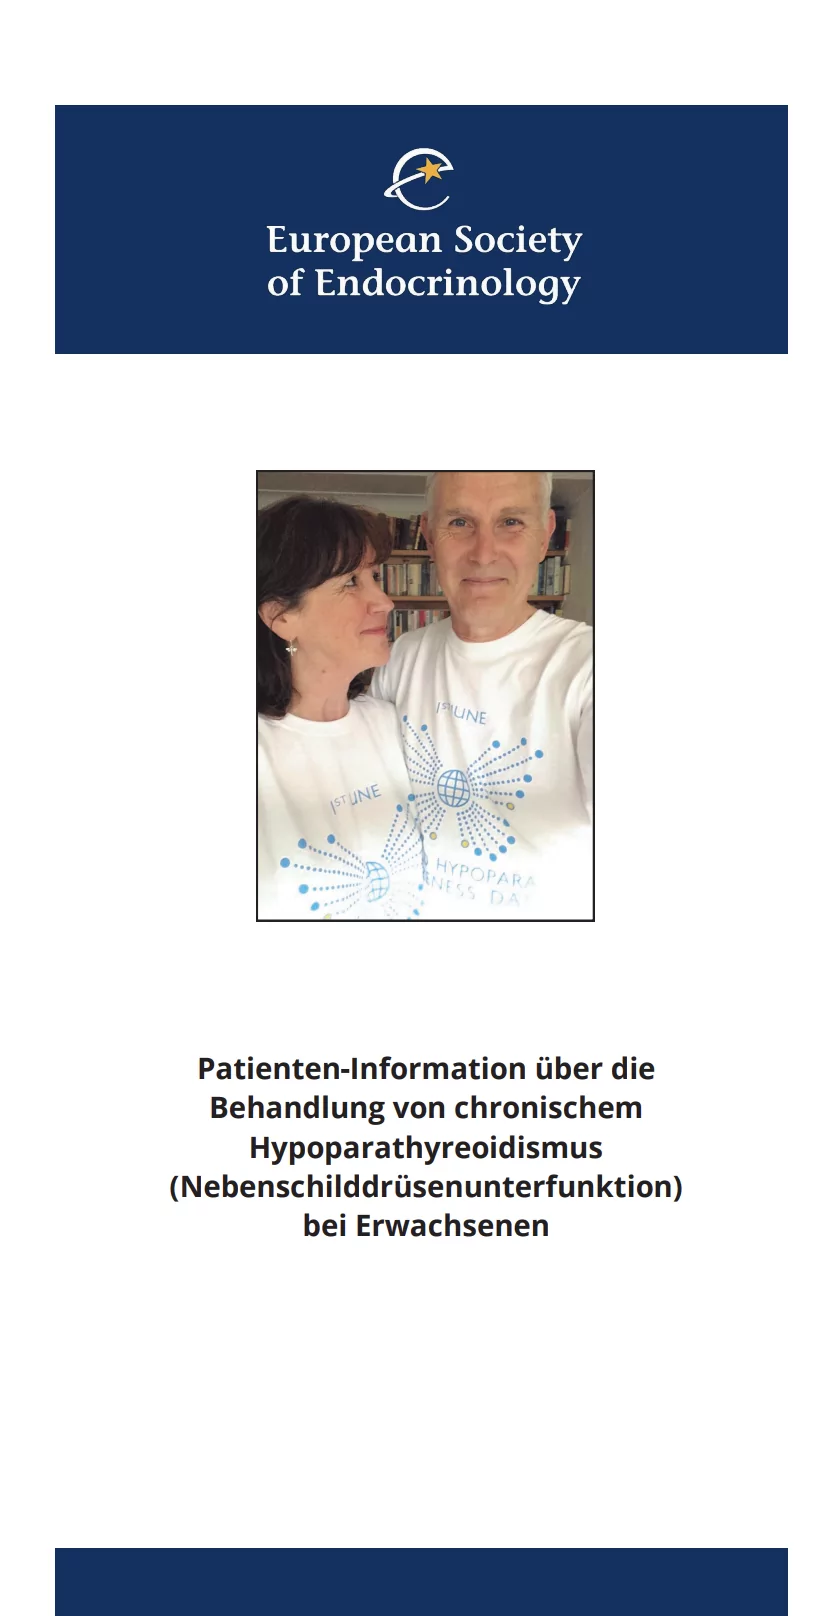 Titelseite: Behandlung des chronischen Hypoparathyreoidismus